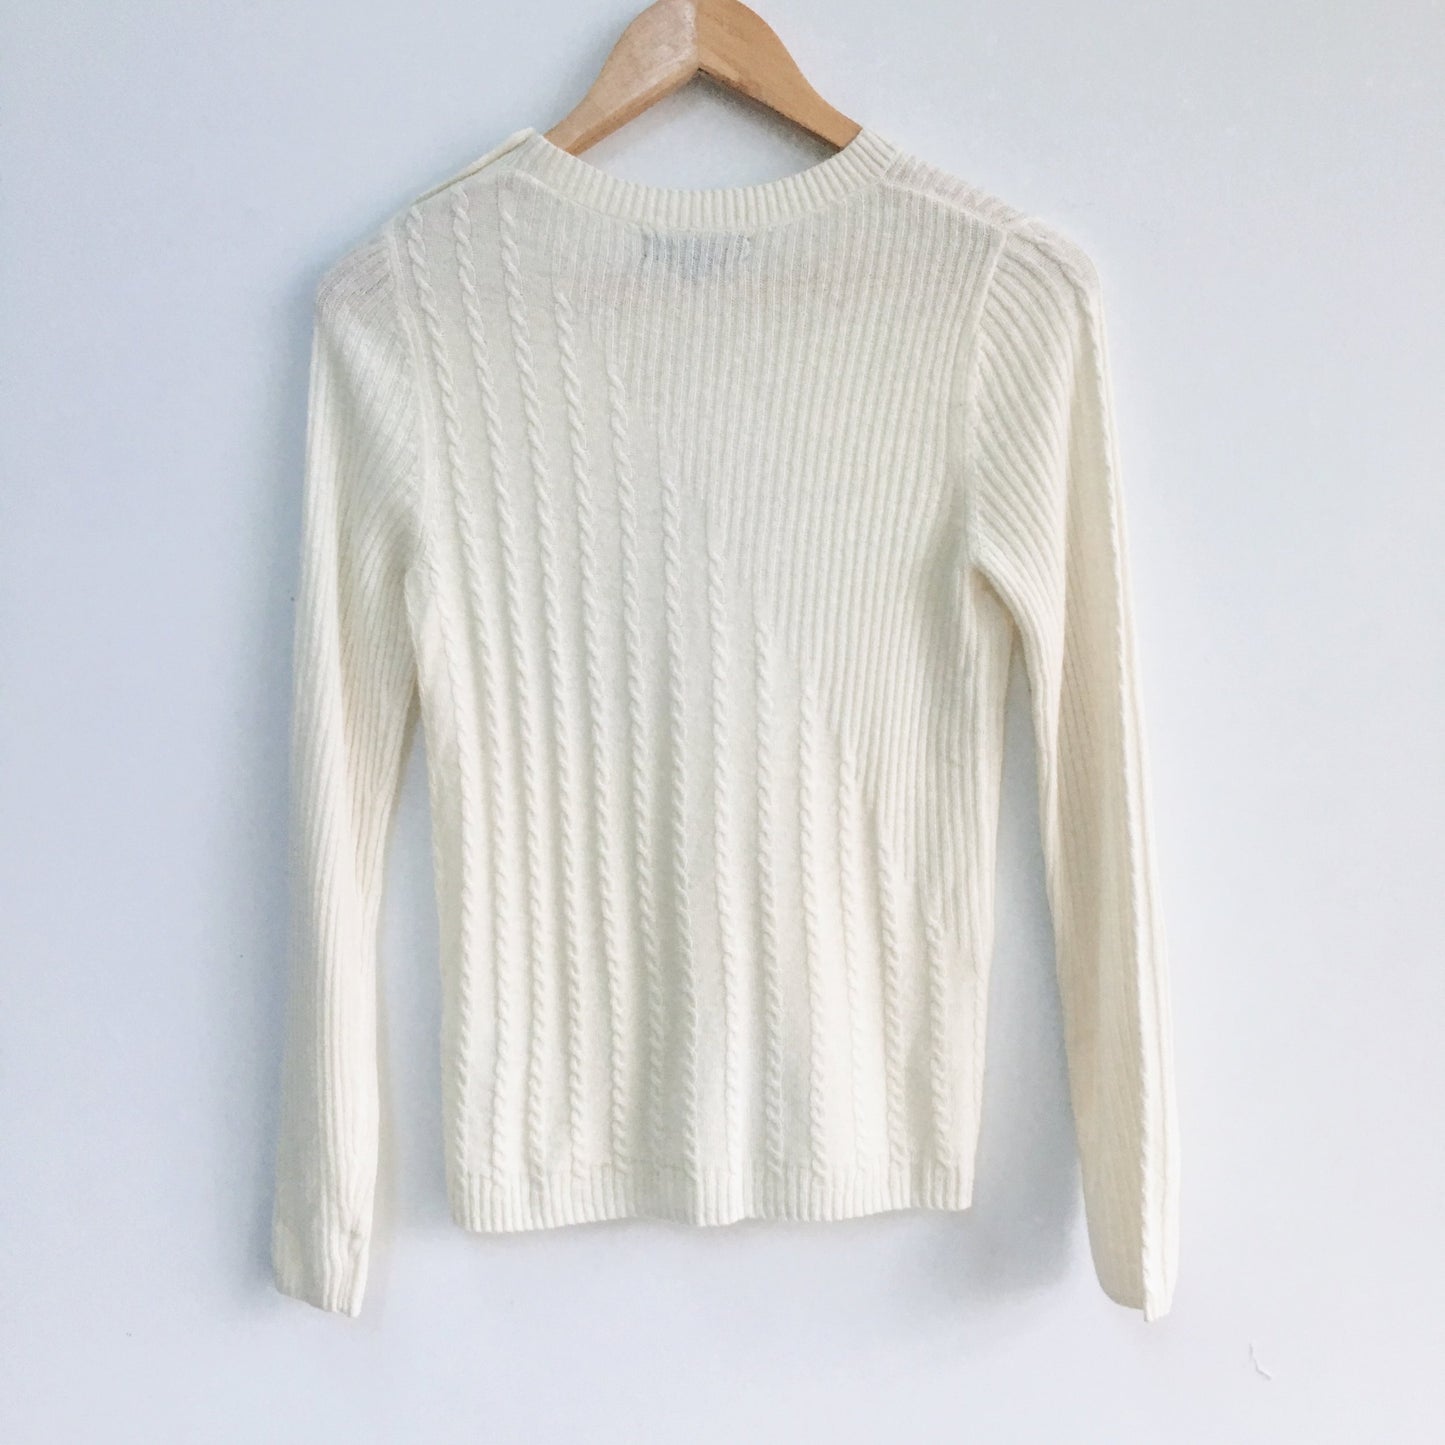 Banana Republic Italian Yarn Wool Sweater NWT - Size xs